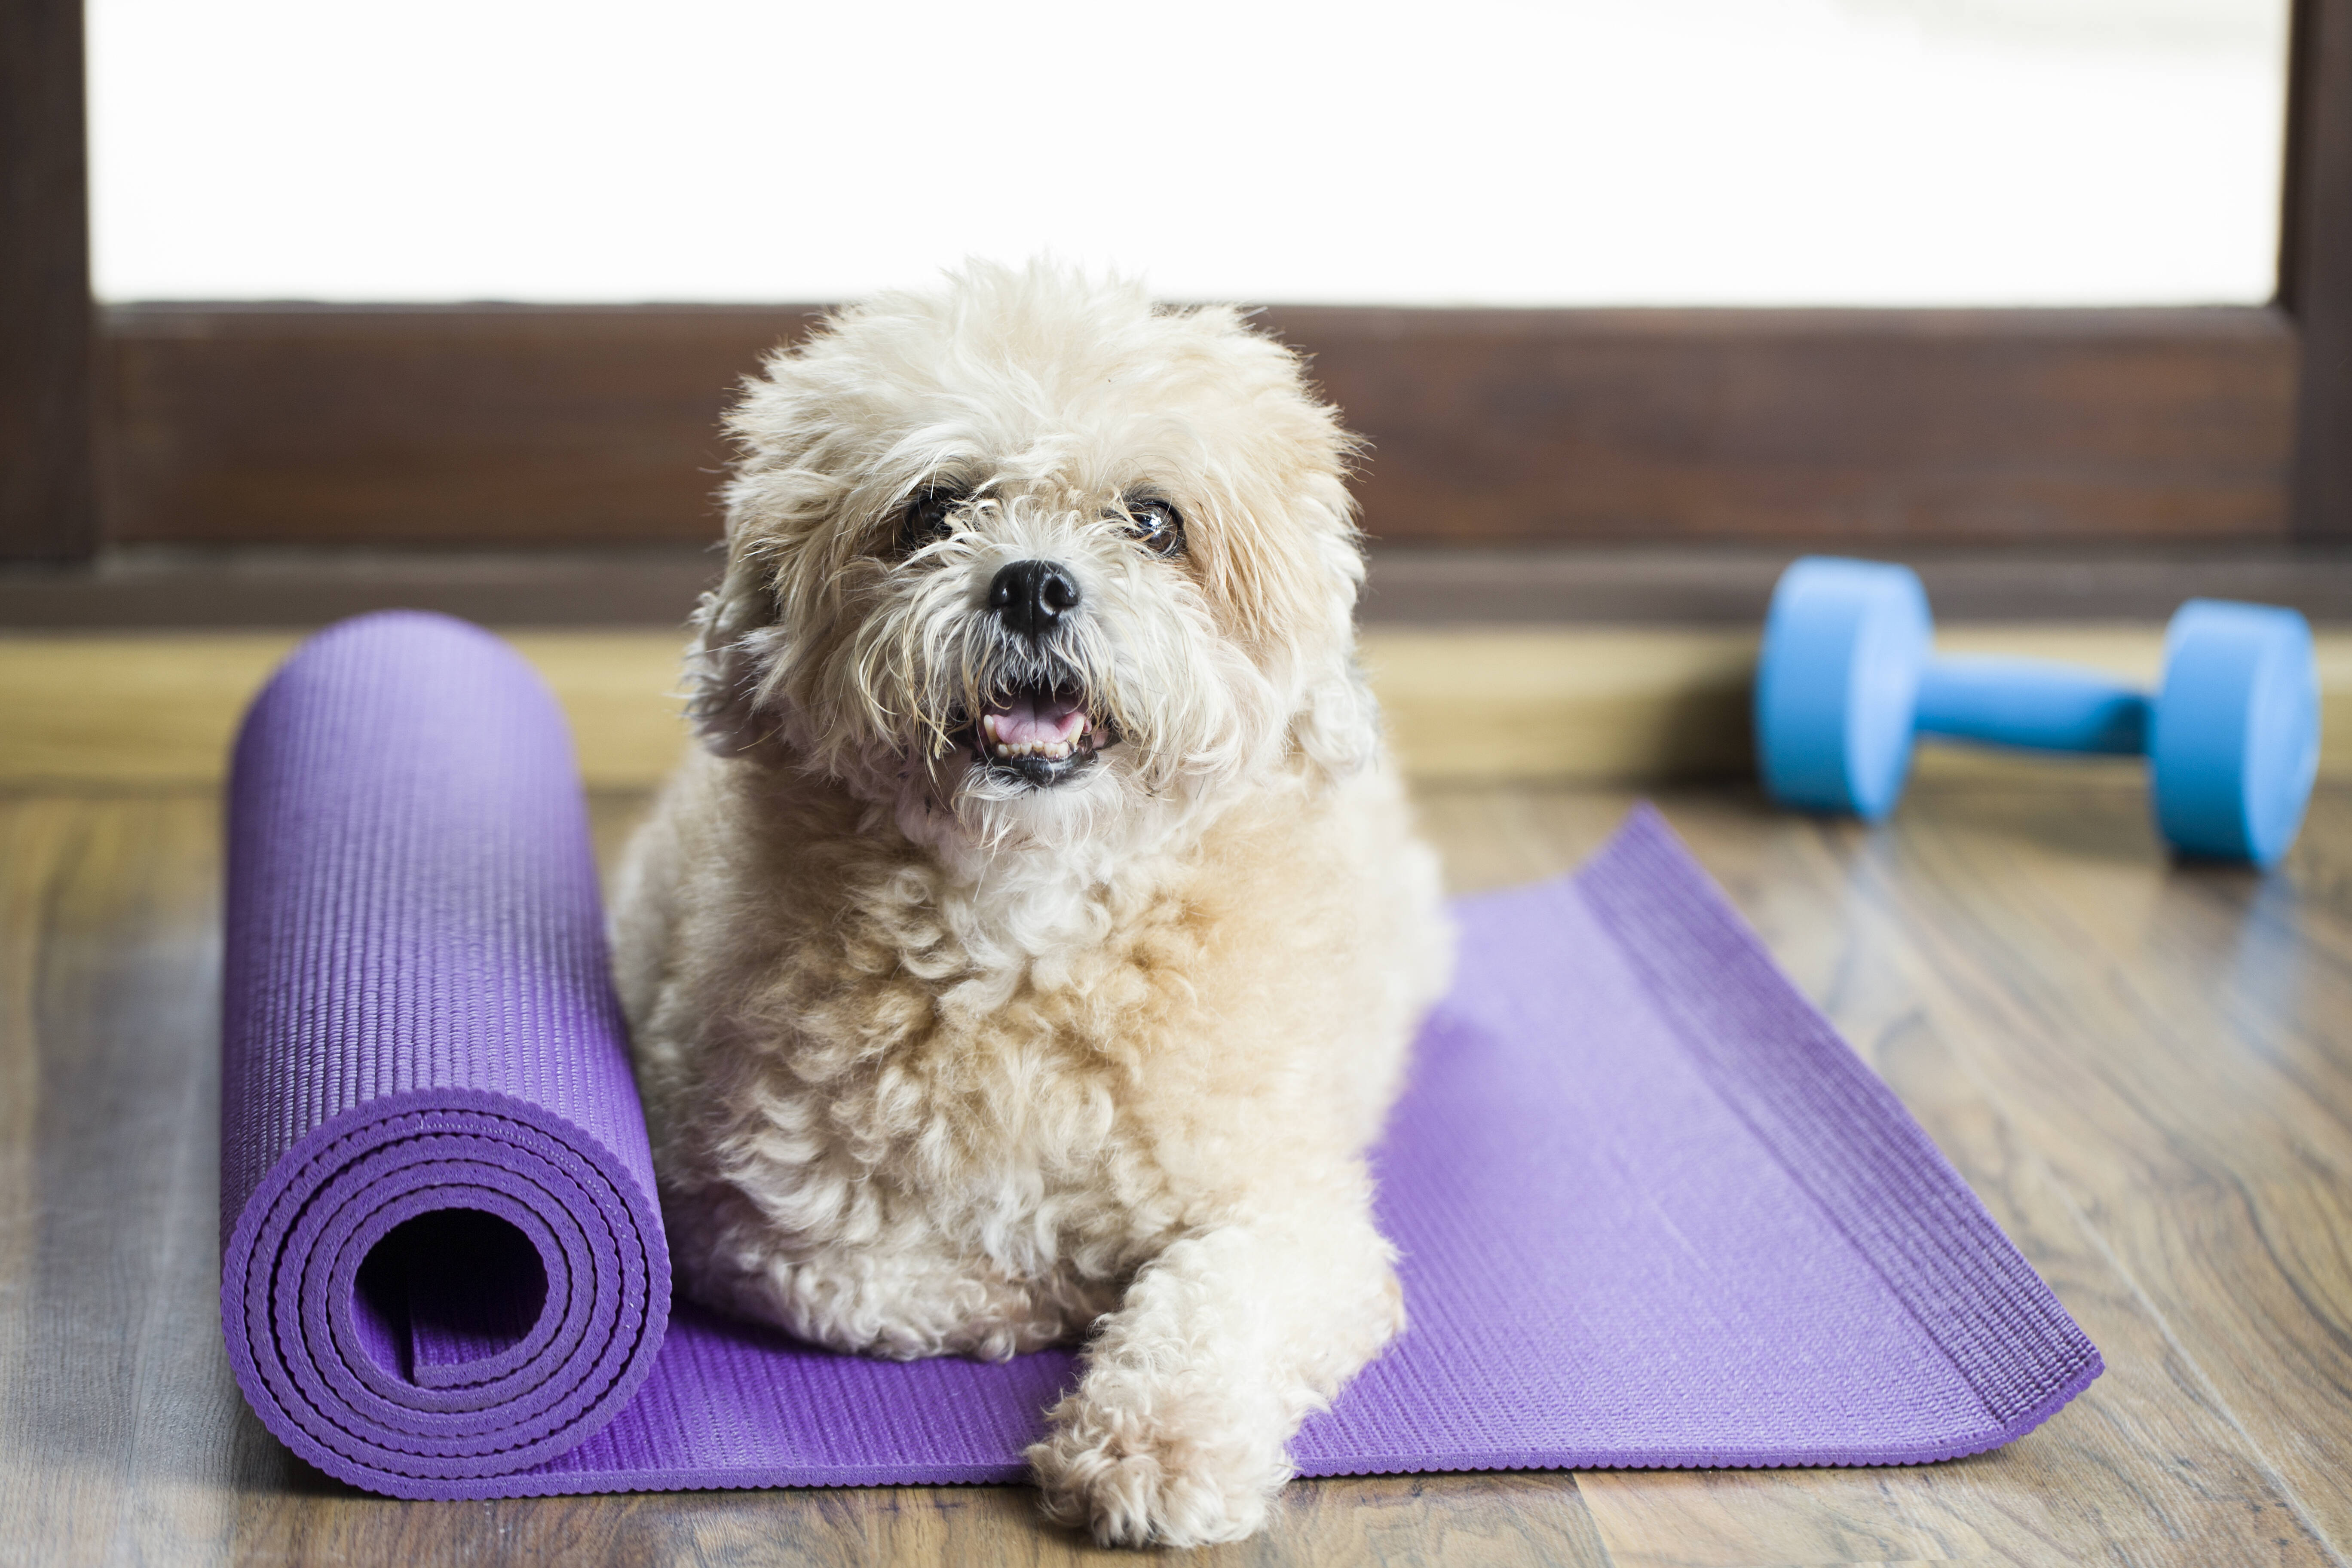 Yoga ajuda a relaxar tanto o tutor quanto o pet, além de estreitar a relação. Foto: Reprodução/ Shutterstock